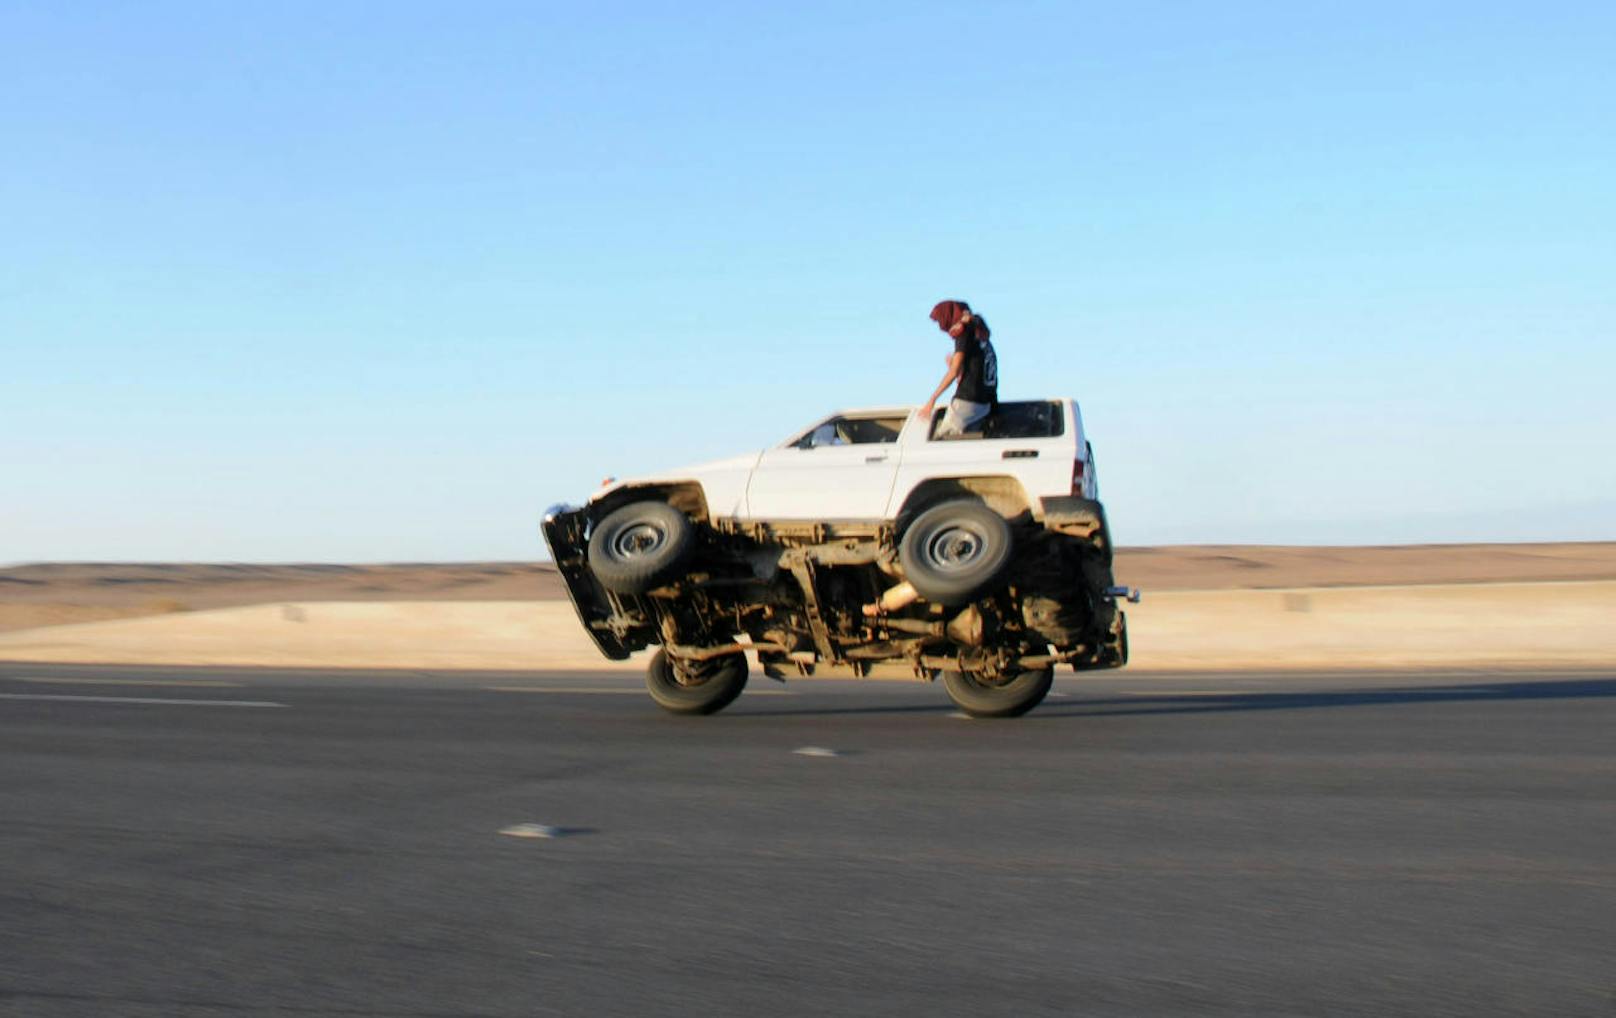 In Saudi-Arabien haben junge Autofahrer einen besonderen Lieblingsstunt: das "Sidewall Skiing" - das Fahren auf zwei Rädern 